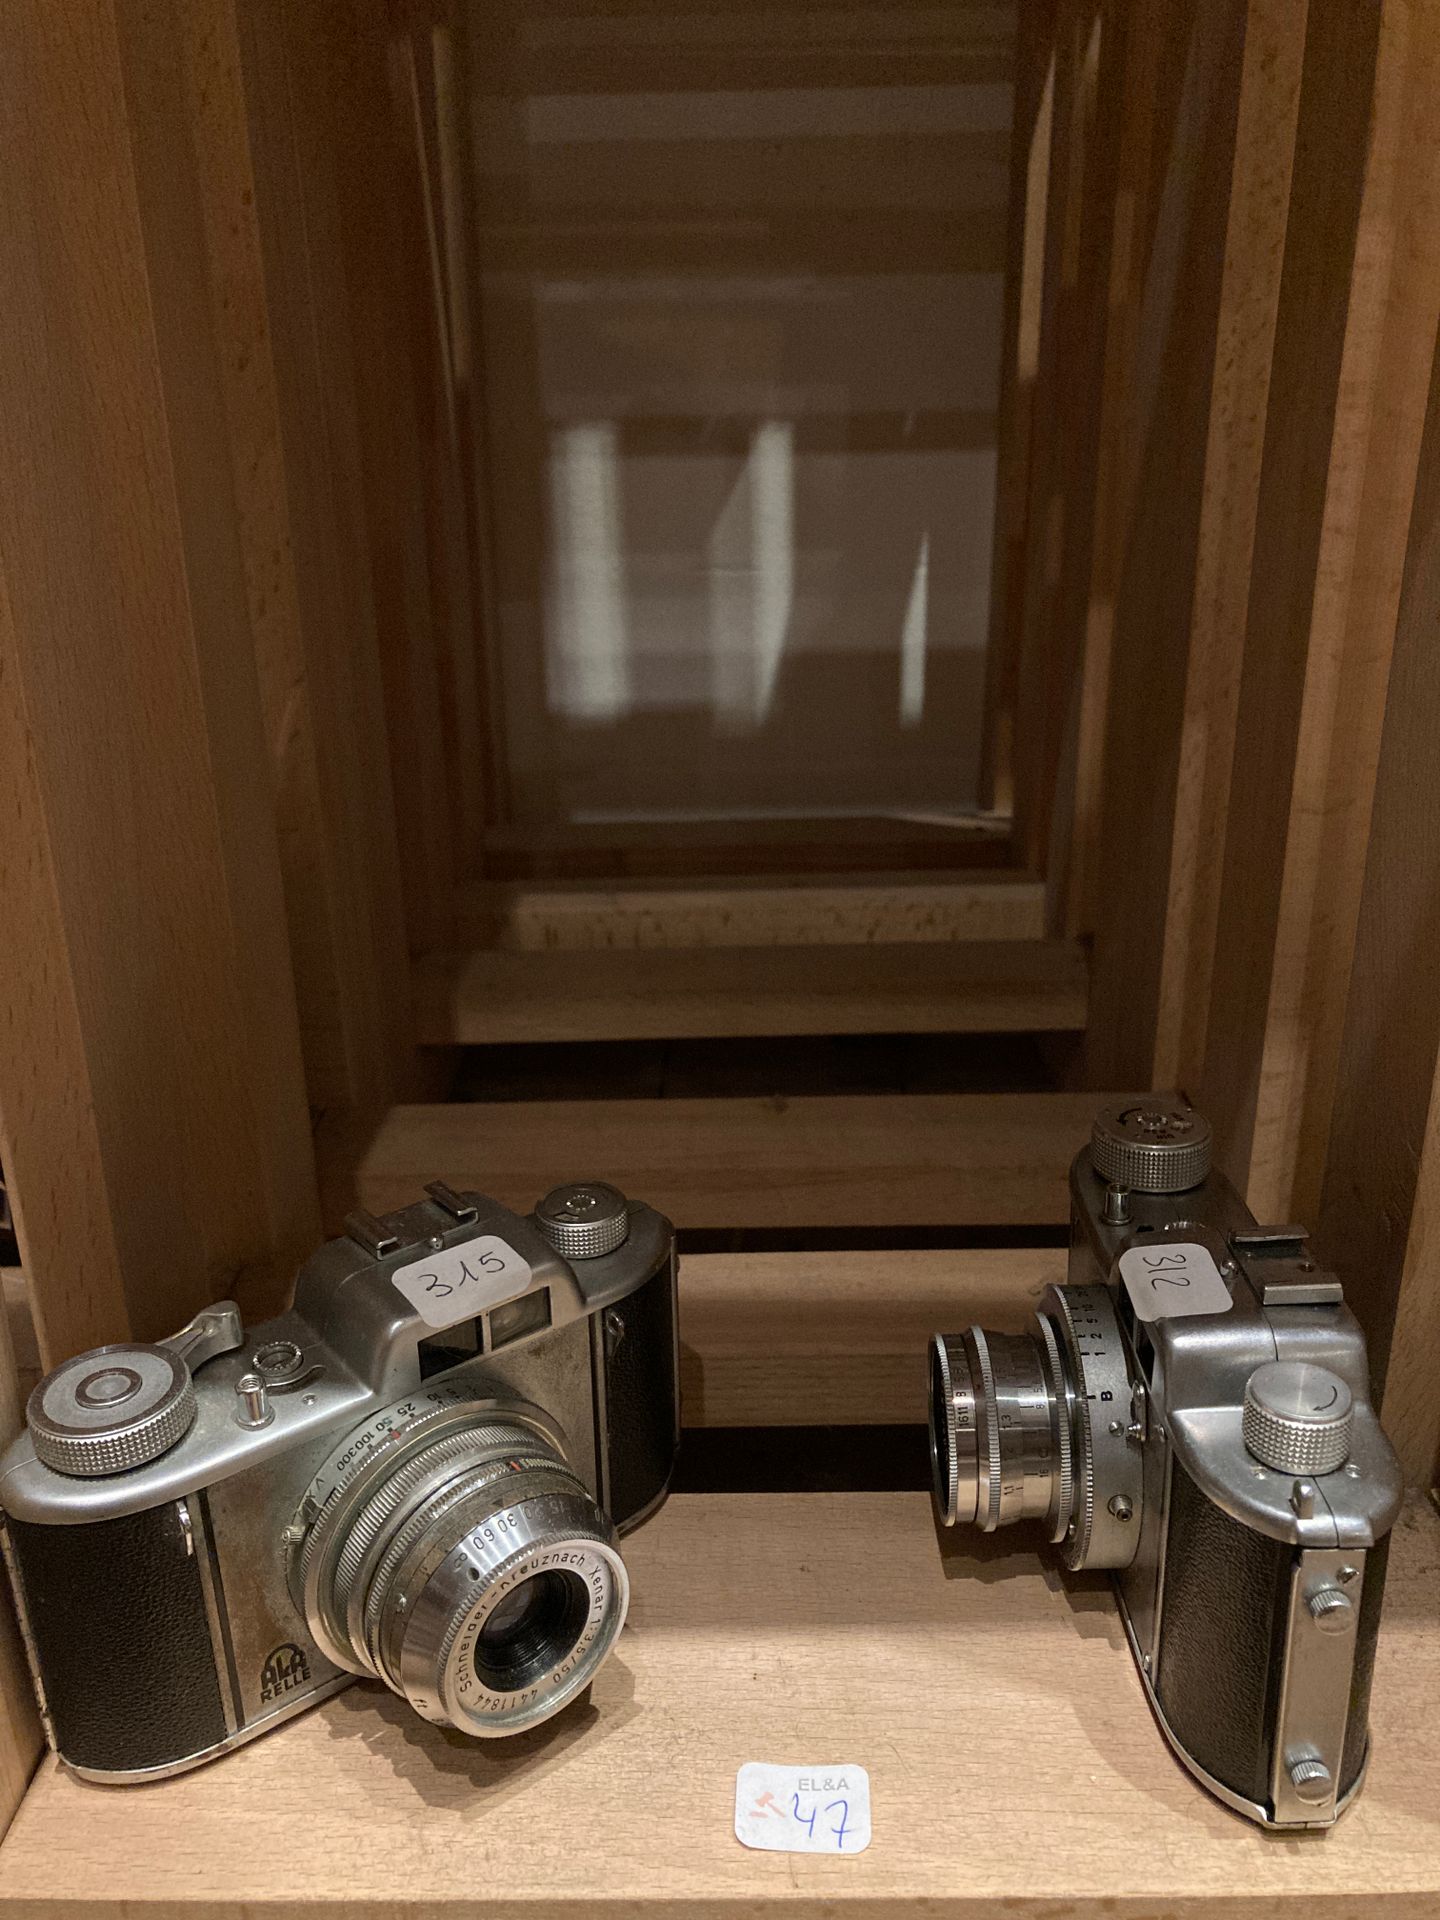 Null Conjunto de dos cámaras Akarelle con objetivos Xenar 2,8/45 mm y 3,5/50 mm.